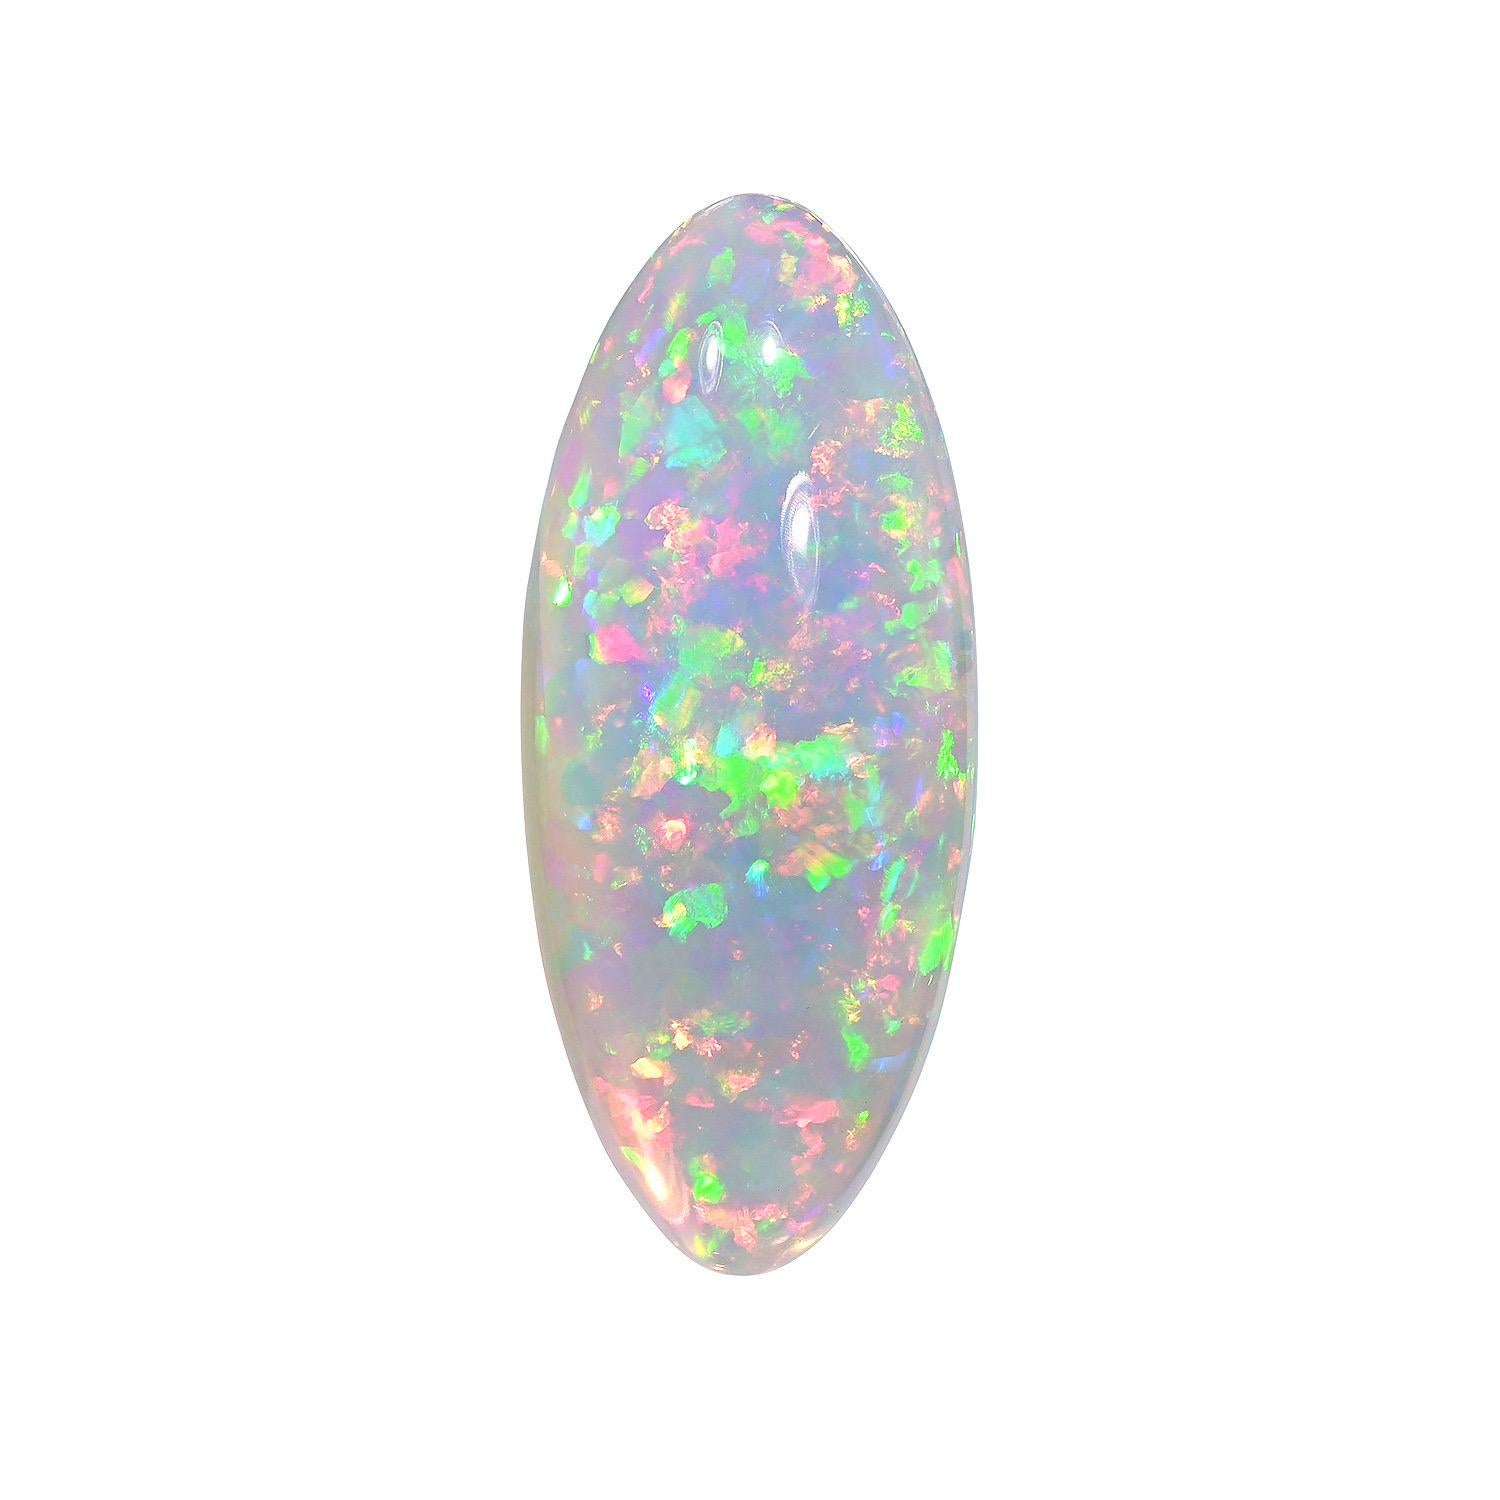 Natürlicher 38,92 Karat Marquise Äthiopischer Opal lose Edelstein, angeboten ungefasst an einen begeisterten Edelsteinsammler.
Rücksendungen werden von uns innerhalb von 7 Tagen nach Lieferung angenommen und bezahlt.
Auf Anfrage bieten wir Ihnen